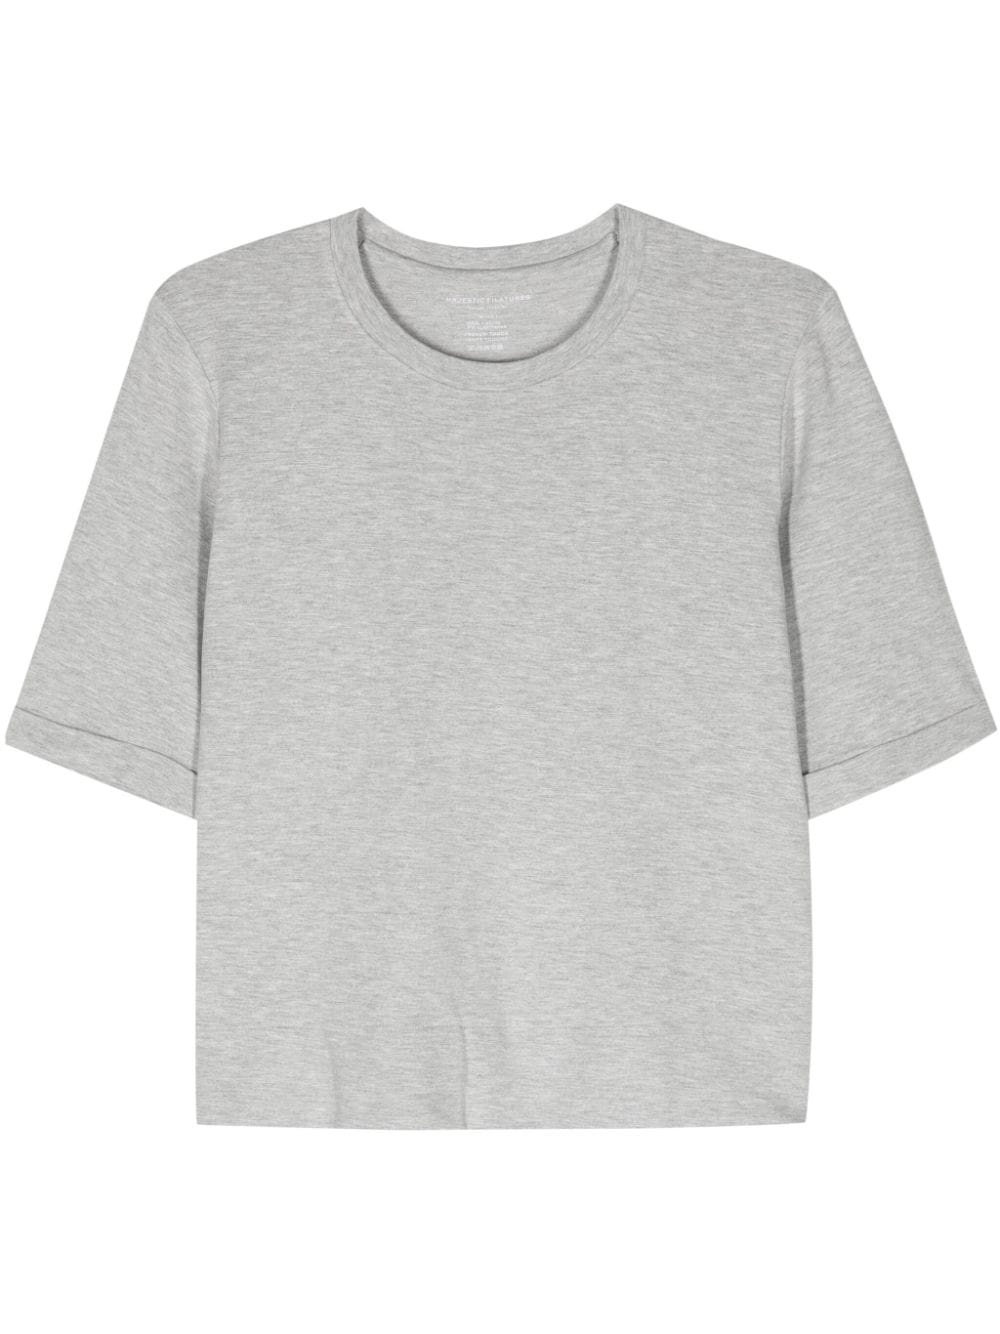 Majestic Filatures Jersey T-shirt met geméleerd-effect Grijs